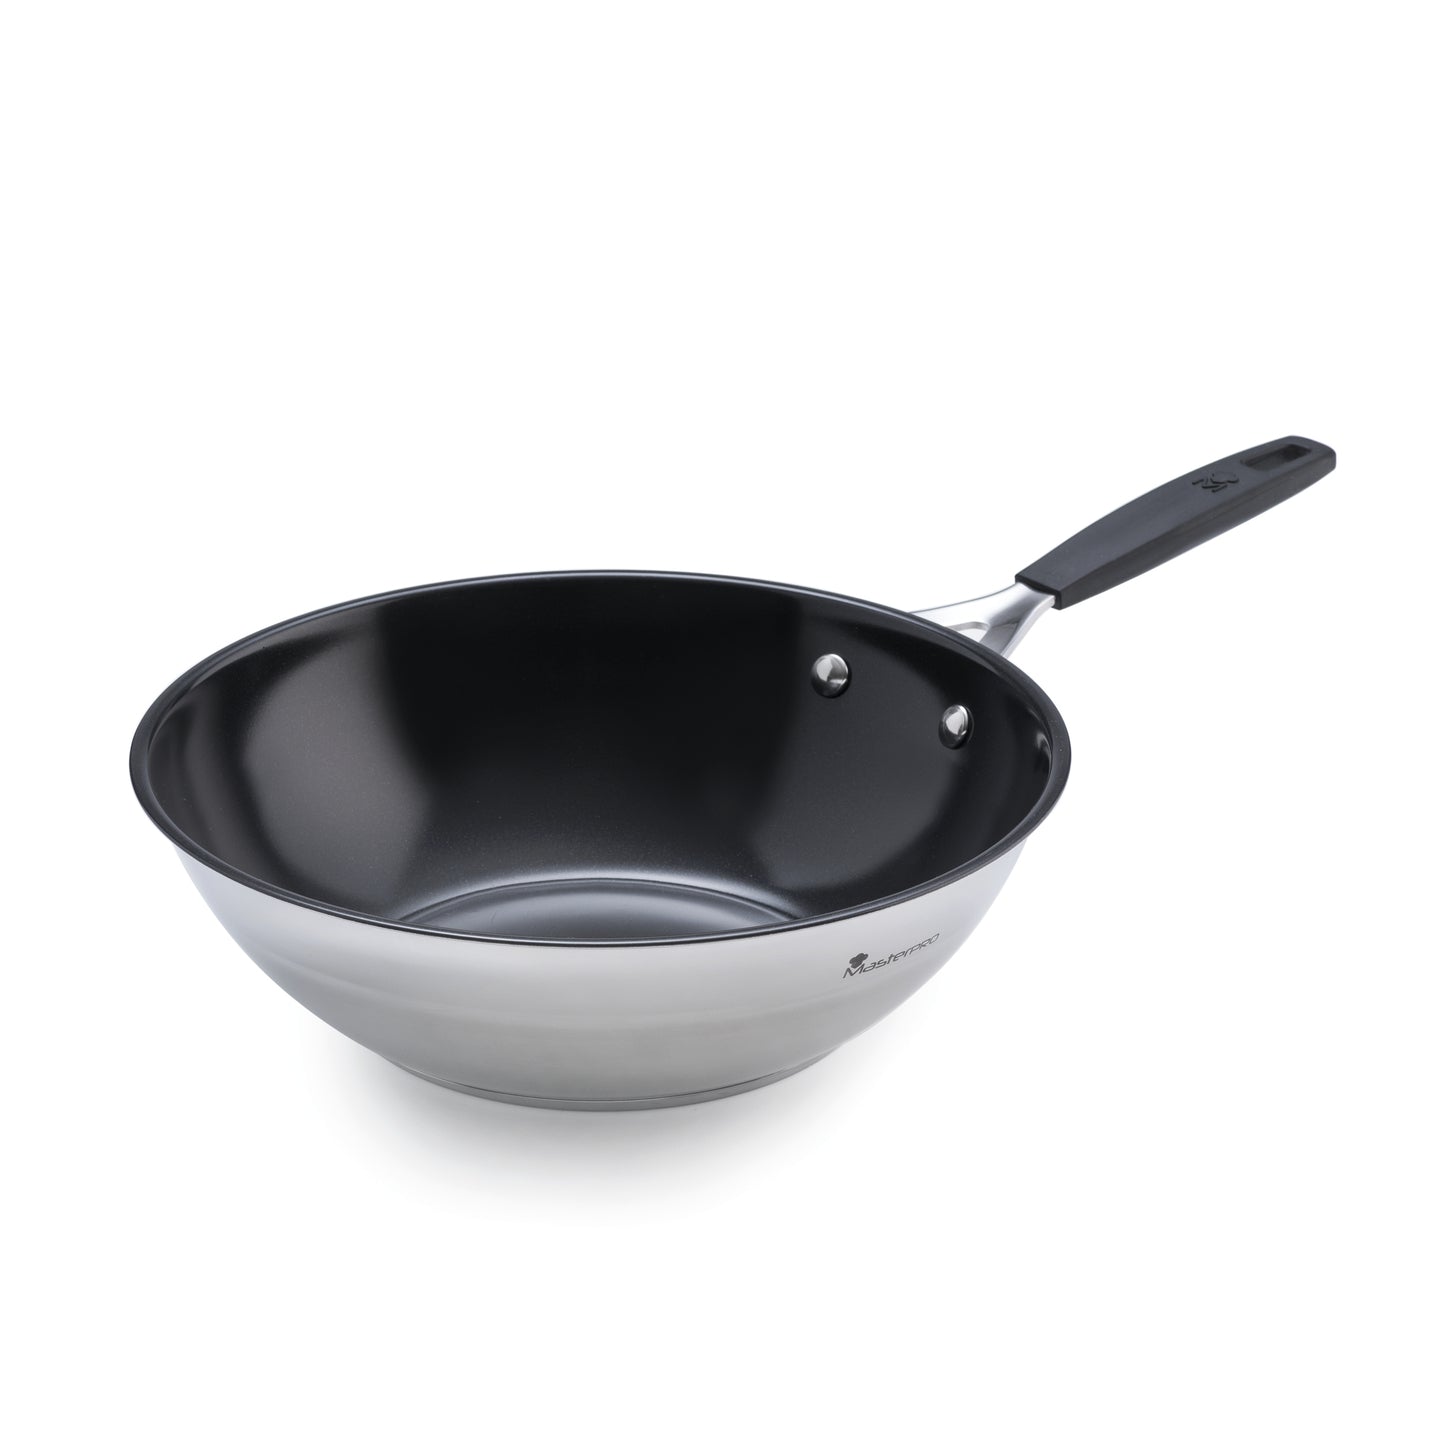 Sabes qué es un wok? ¡Descubre su origen y ventajas al cocinar!